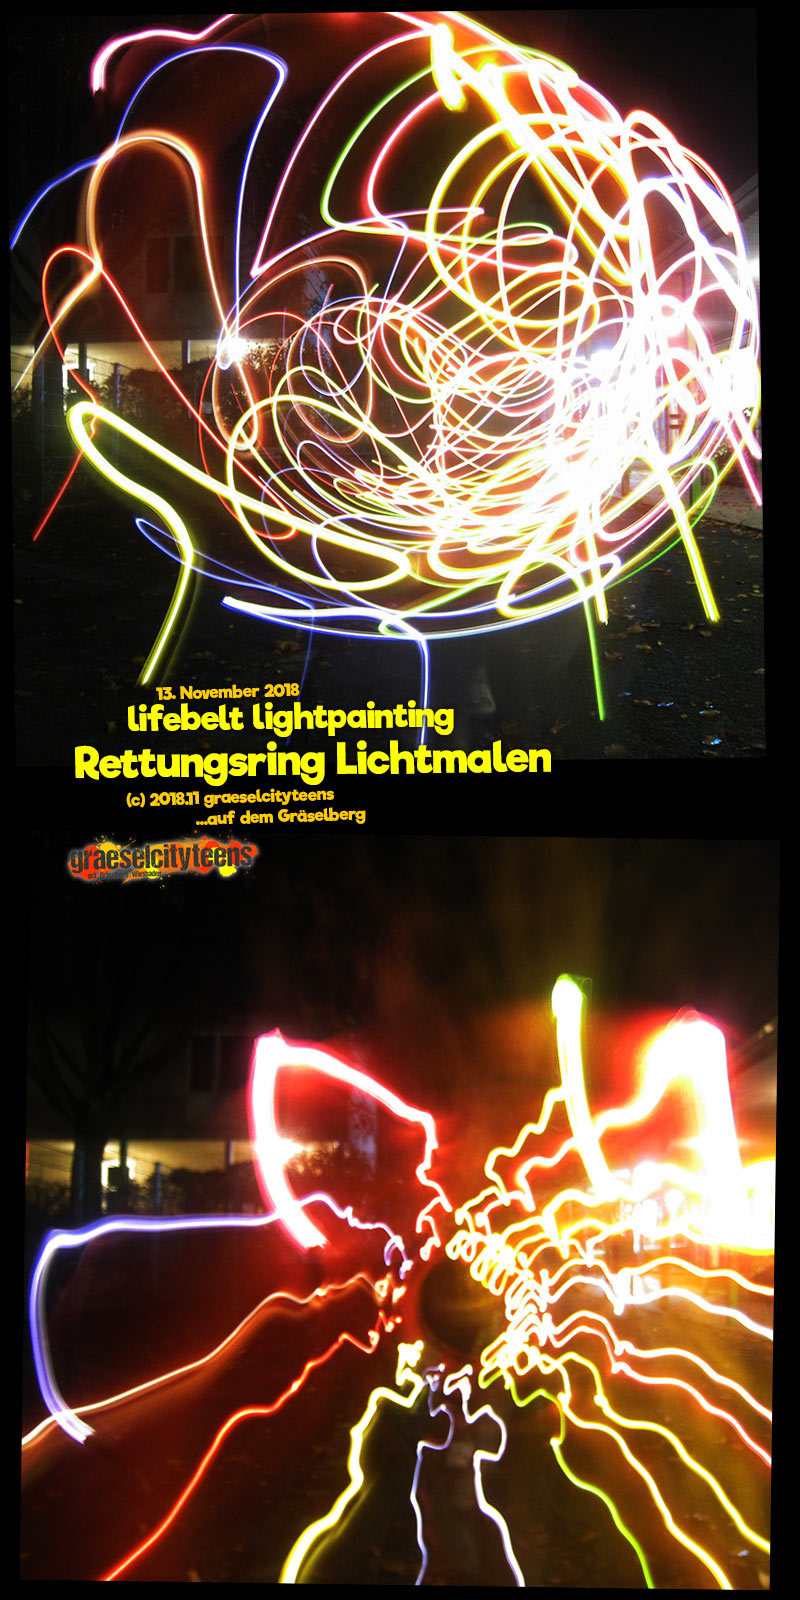 lifebelt lightpainting / Rettungsring Lichtmalen . graeselcityteens .  Stadtteilzentrum GrÃ¤selberg . Wiesbaden